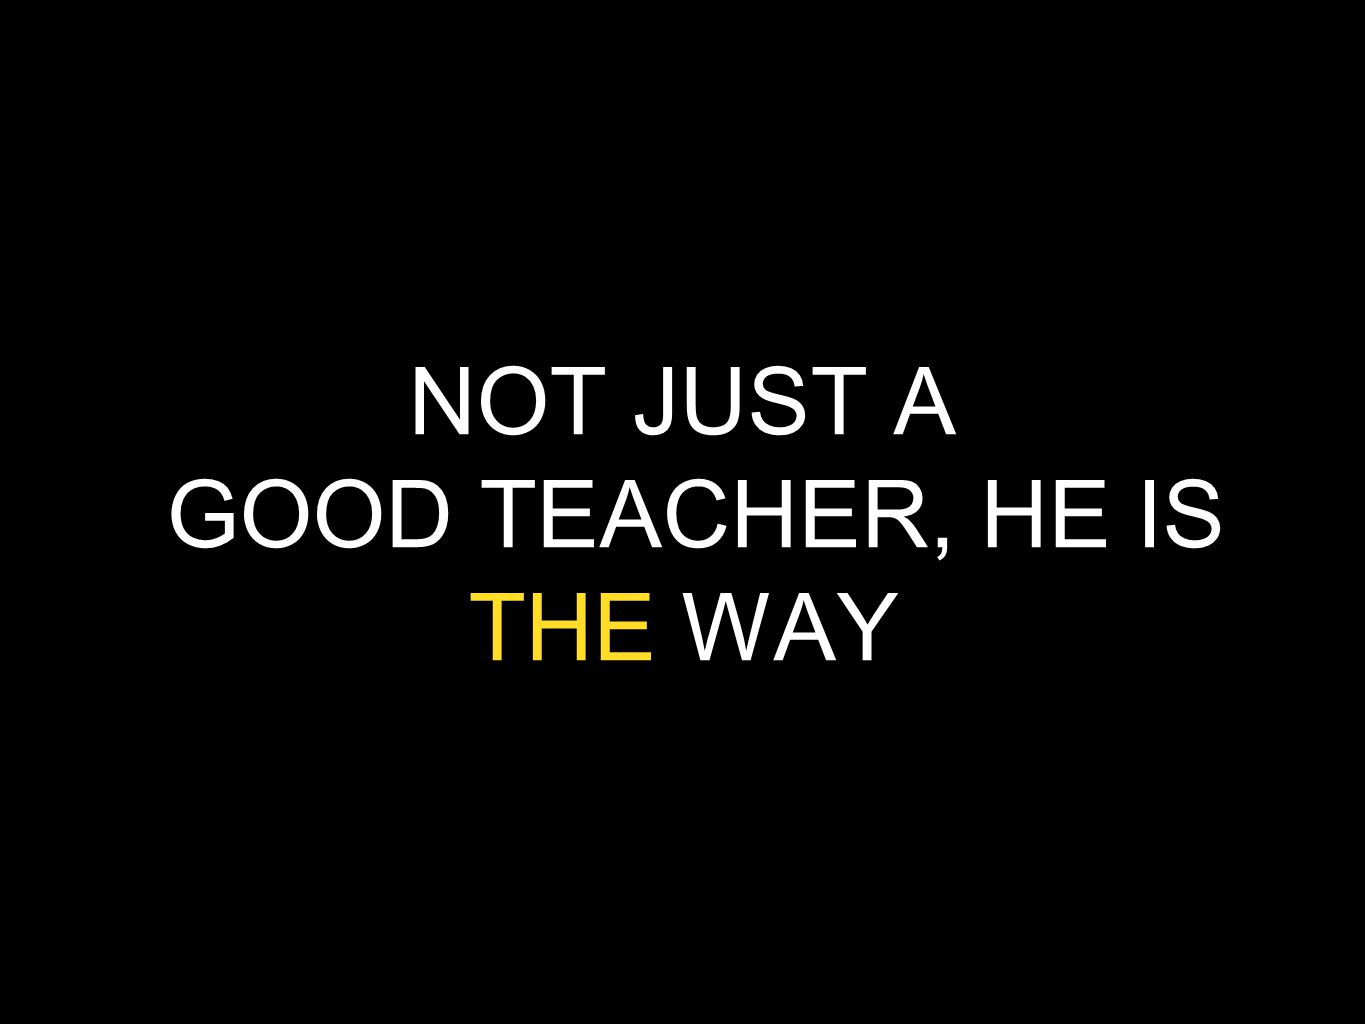 NOT JUST A GOOD TEACHER, HE IS THE WAY